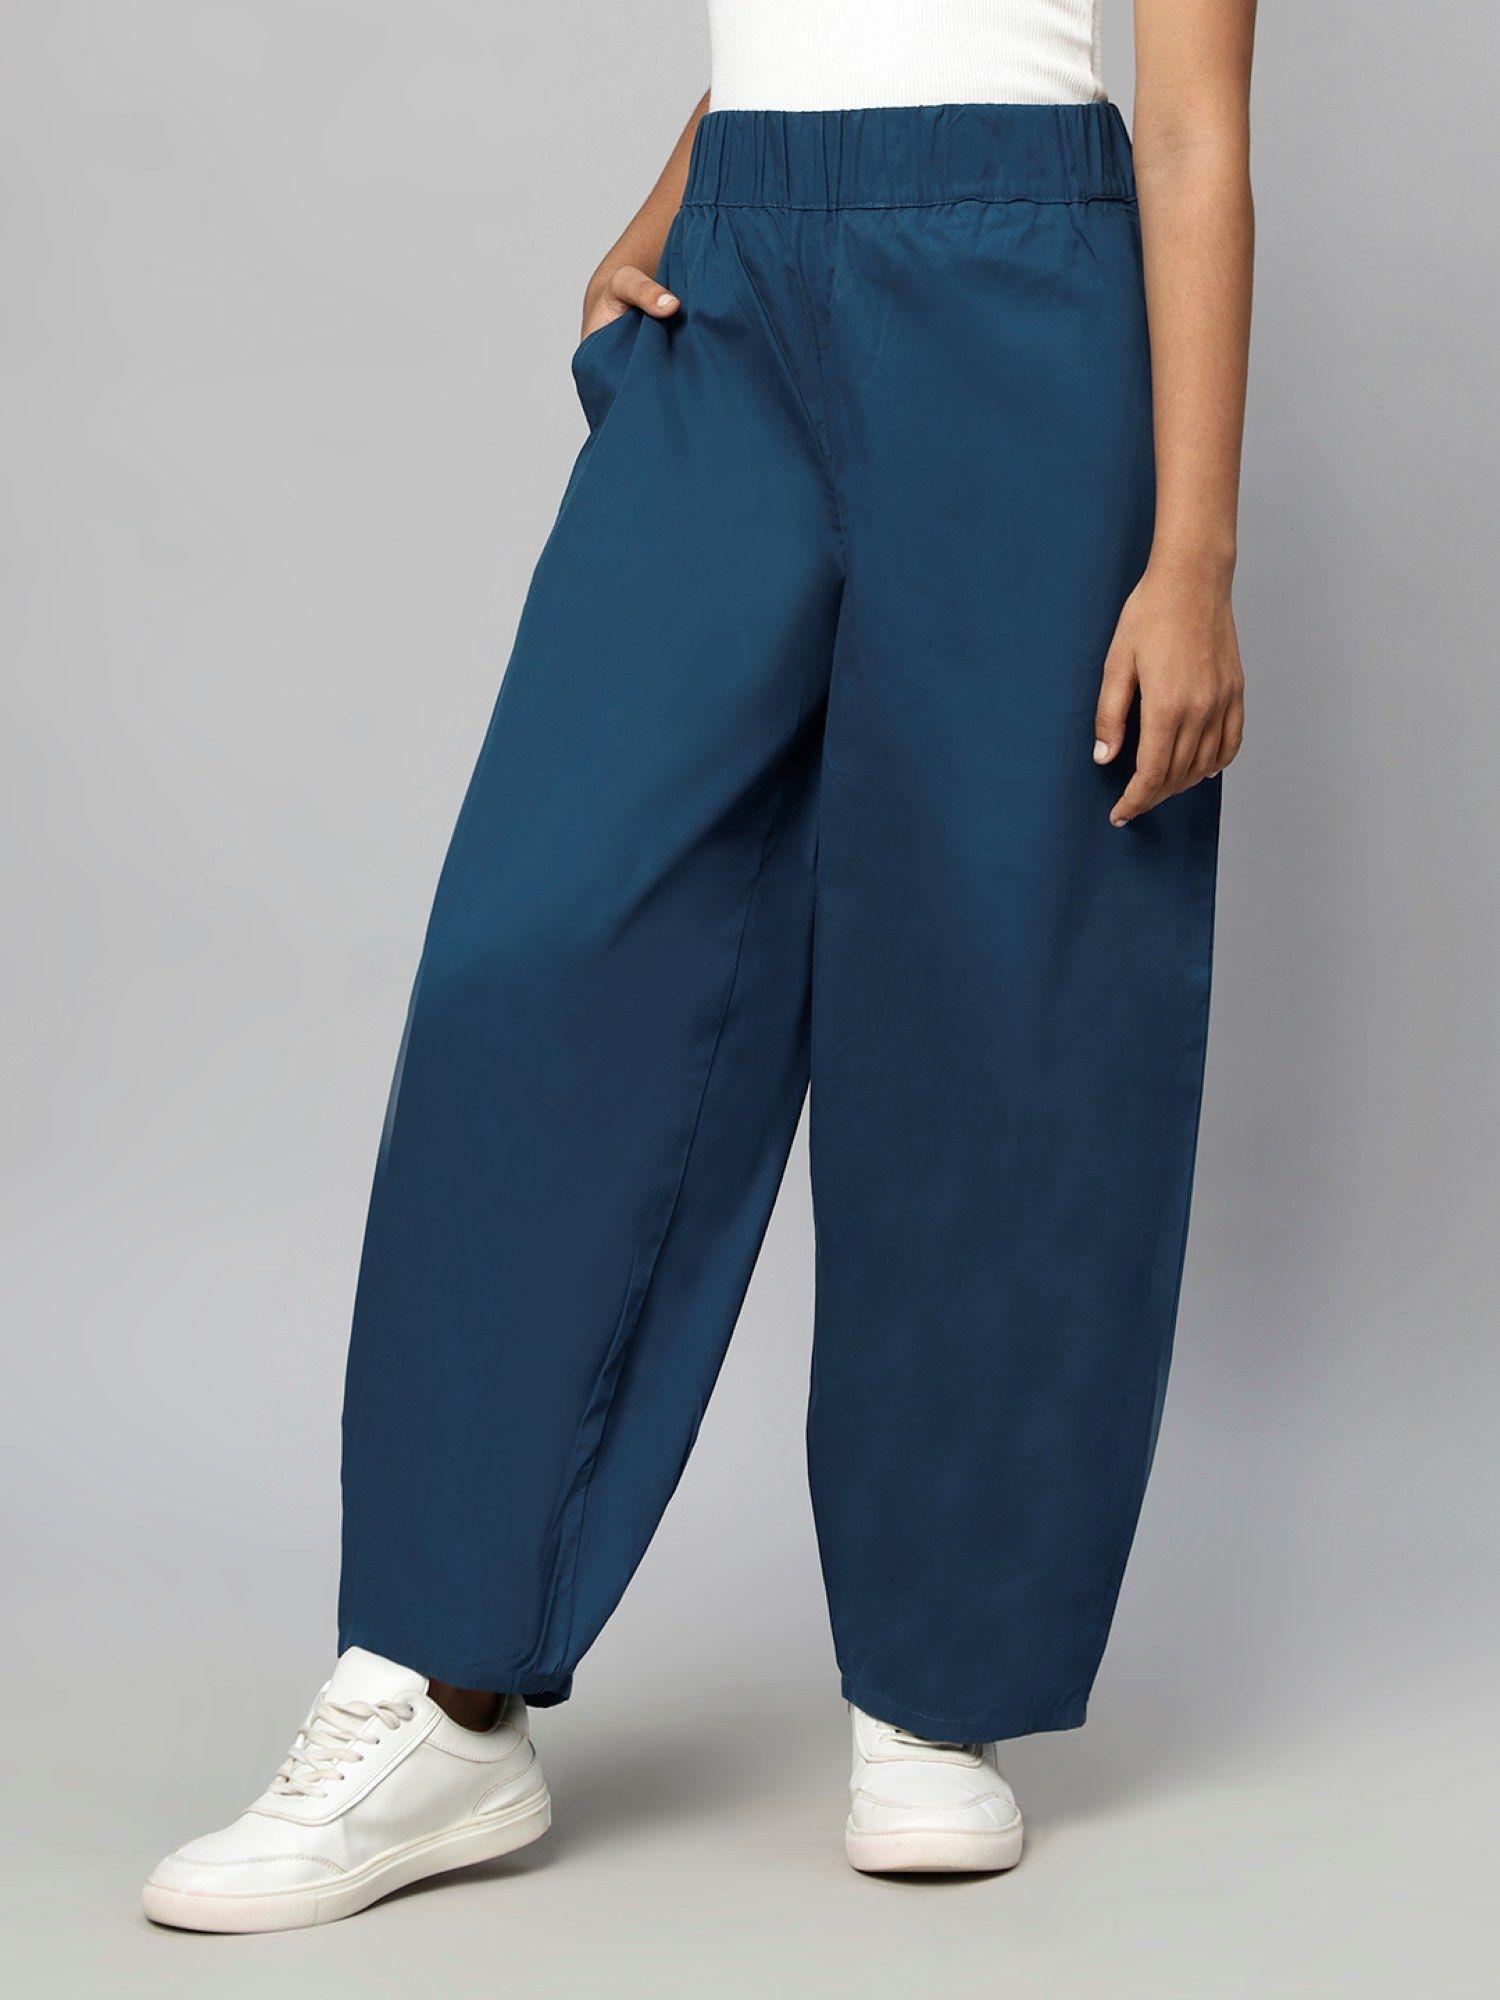 girls woven trouser-teal blue